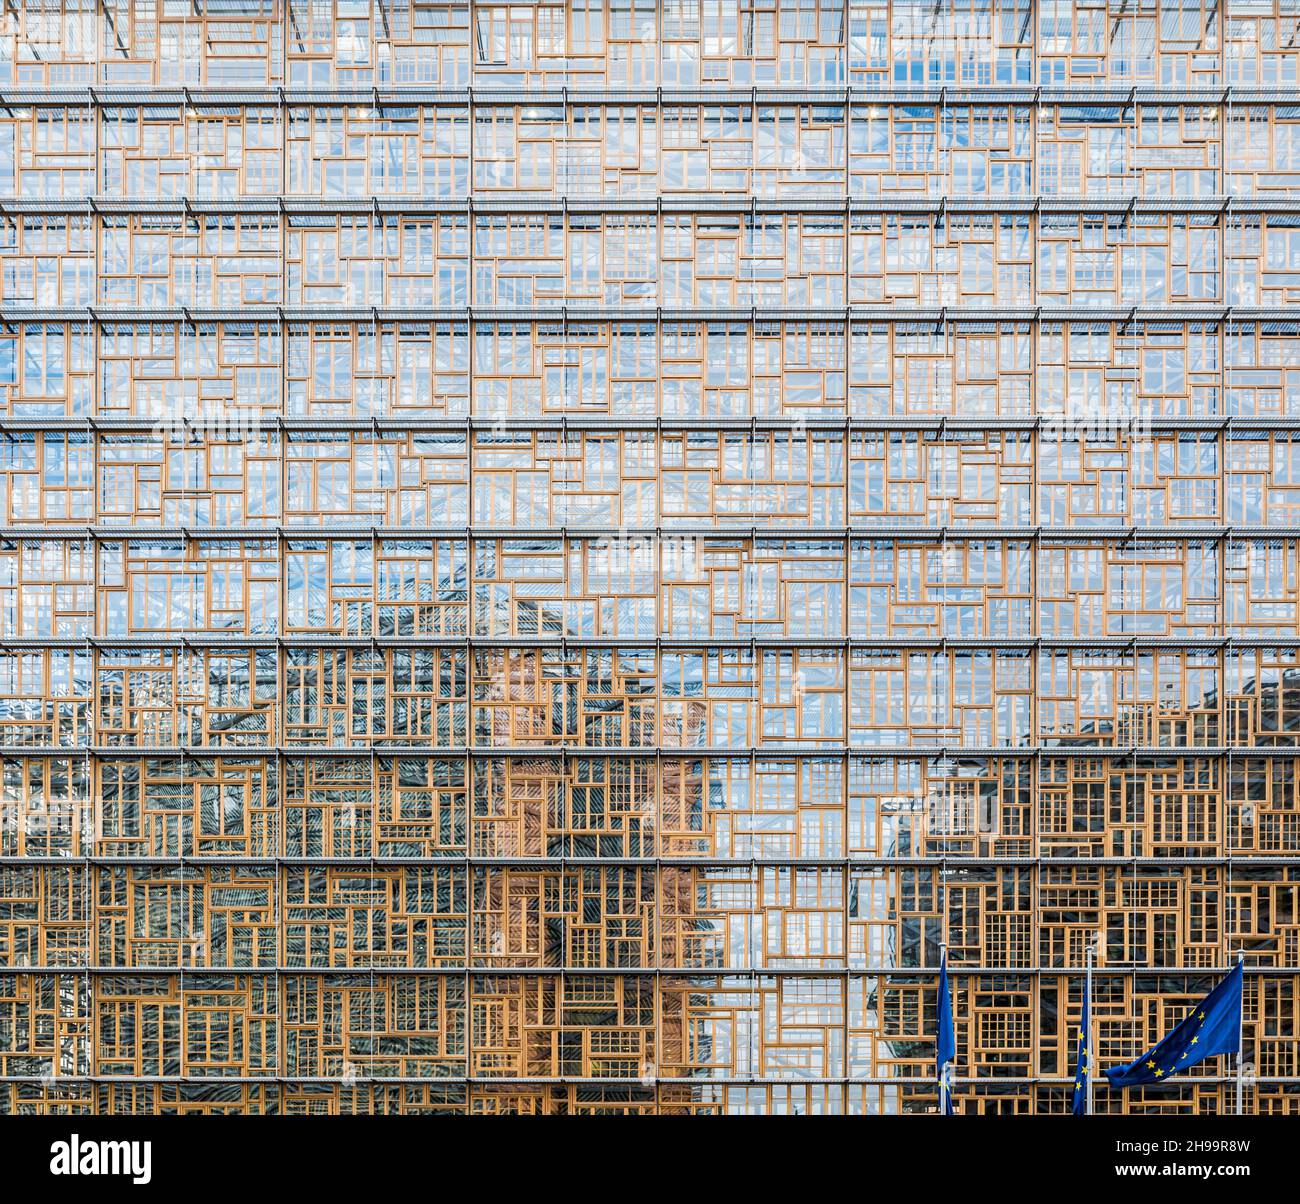 Brüssel, Belgien - 02 15 2018: Fassade des Europäischen Rates in Brüssel Stockfoto